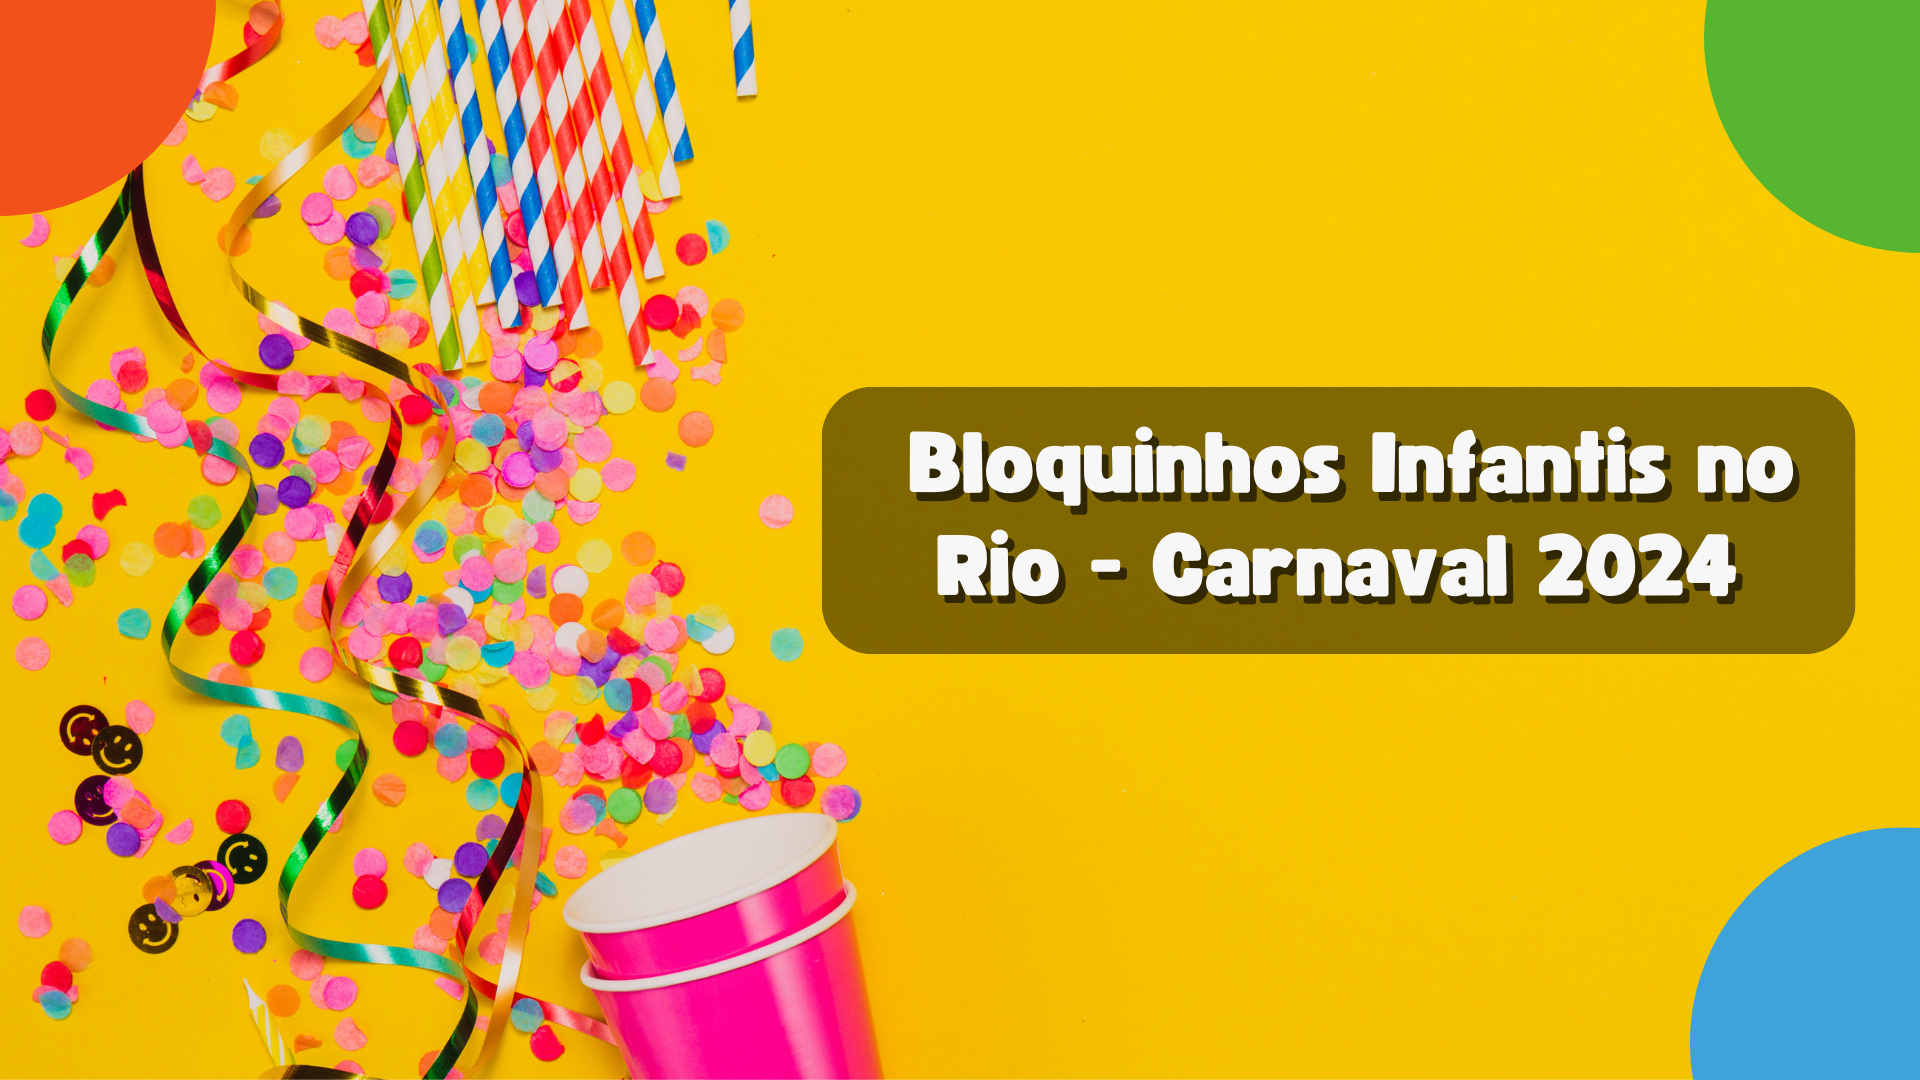 Bloquinhos Infantis no Rio: Veja a Programação de Carnaval 2024 - Pequenos  no Rio